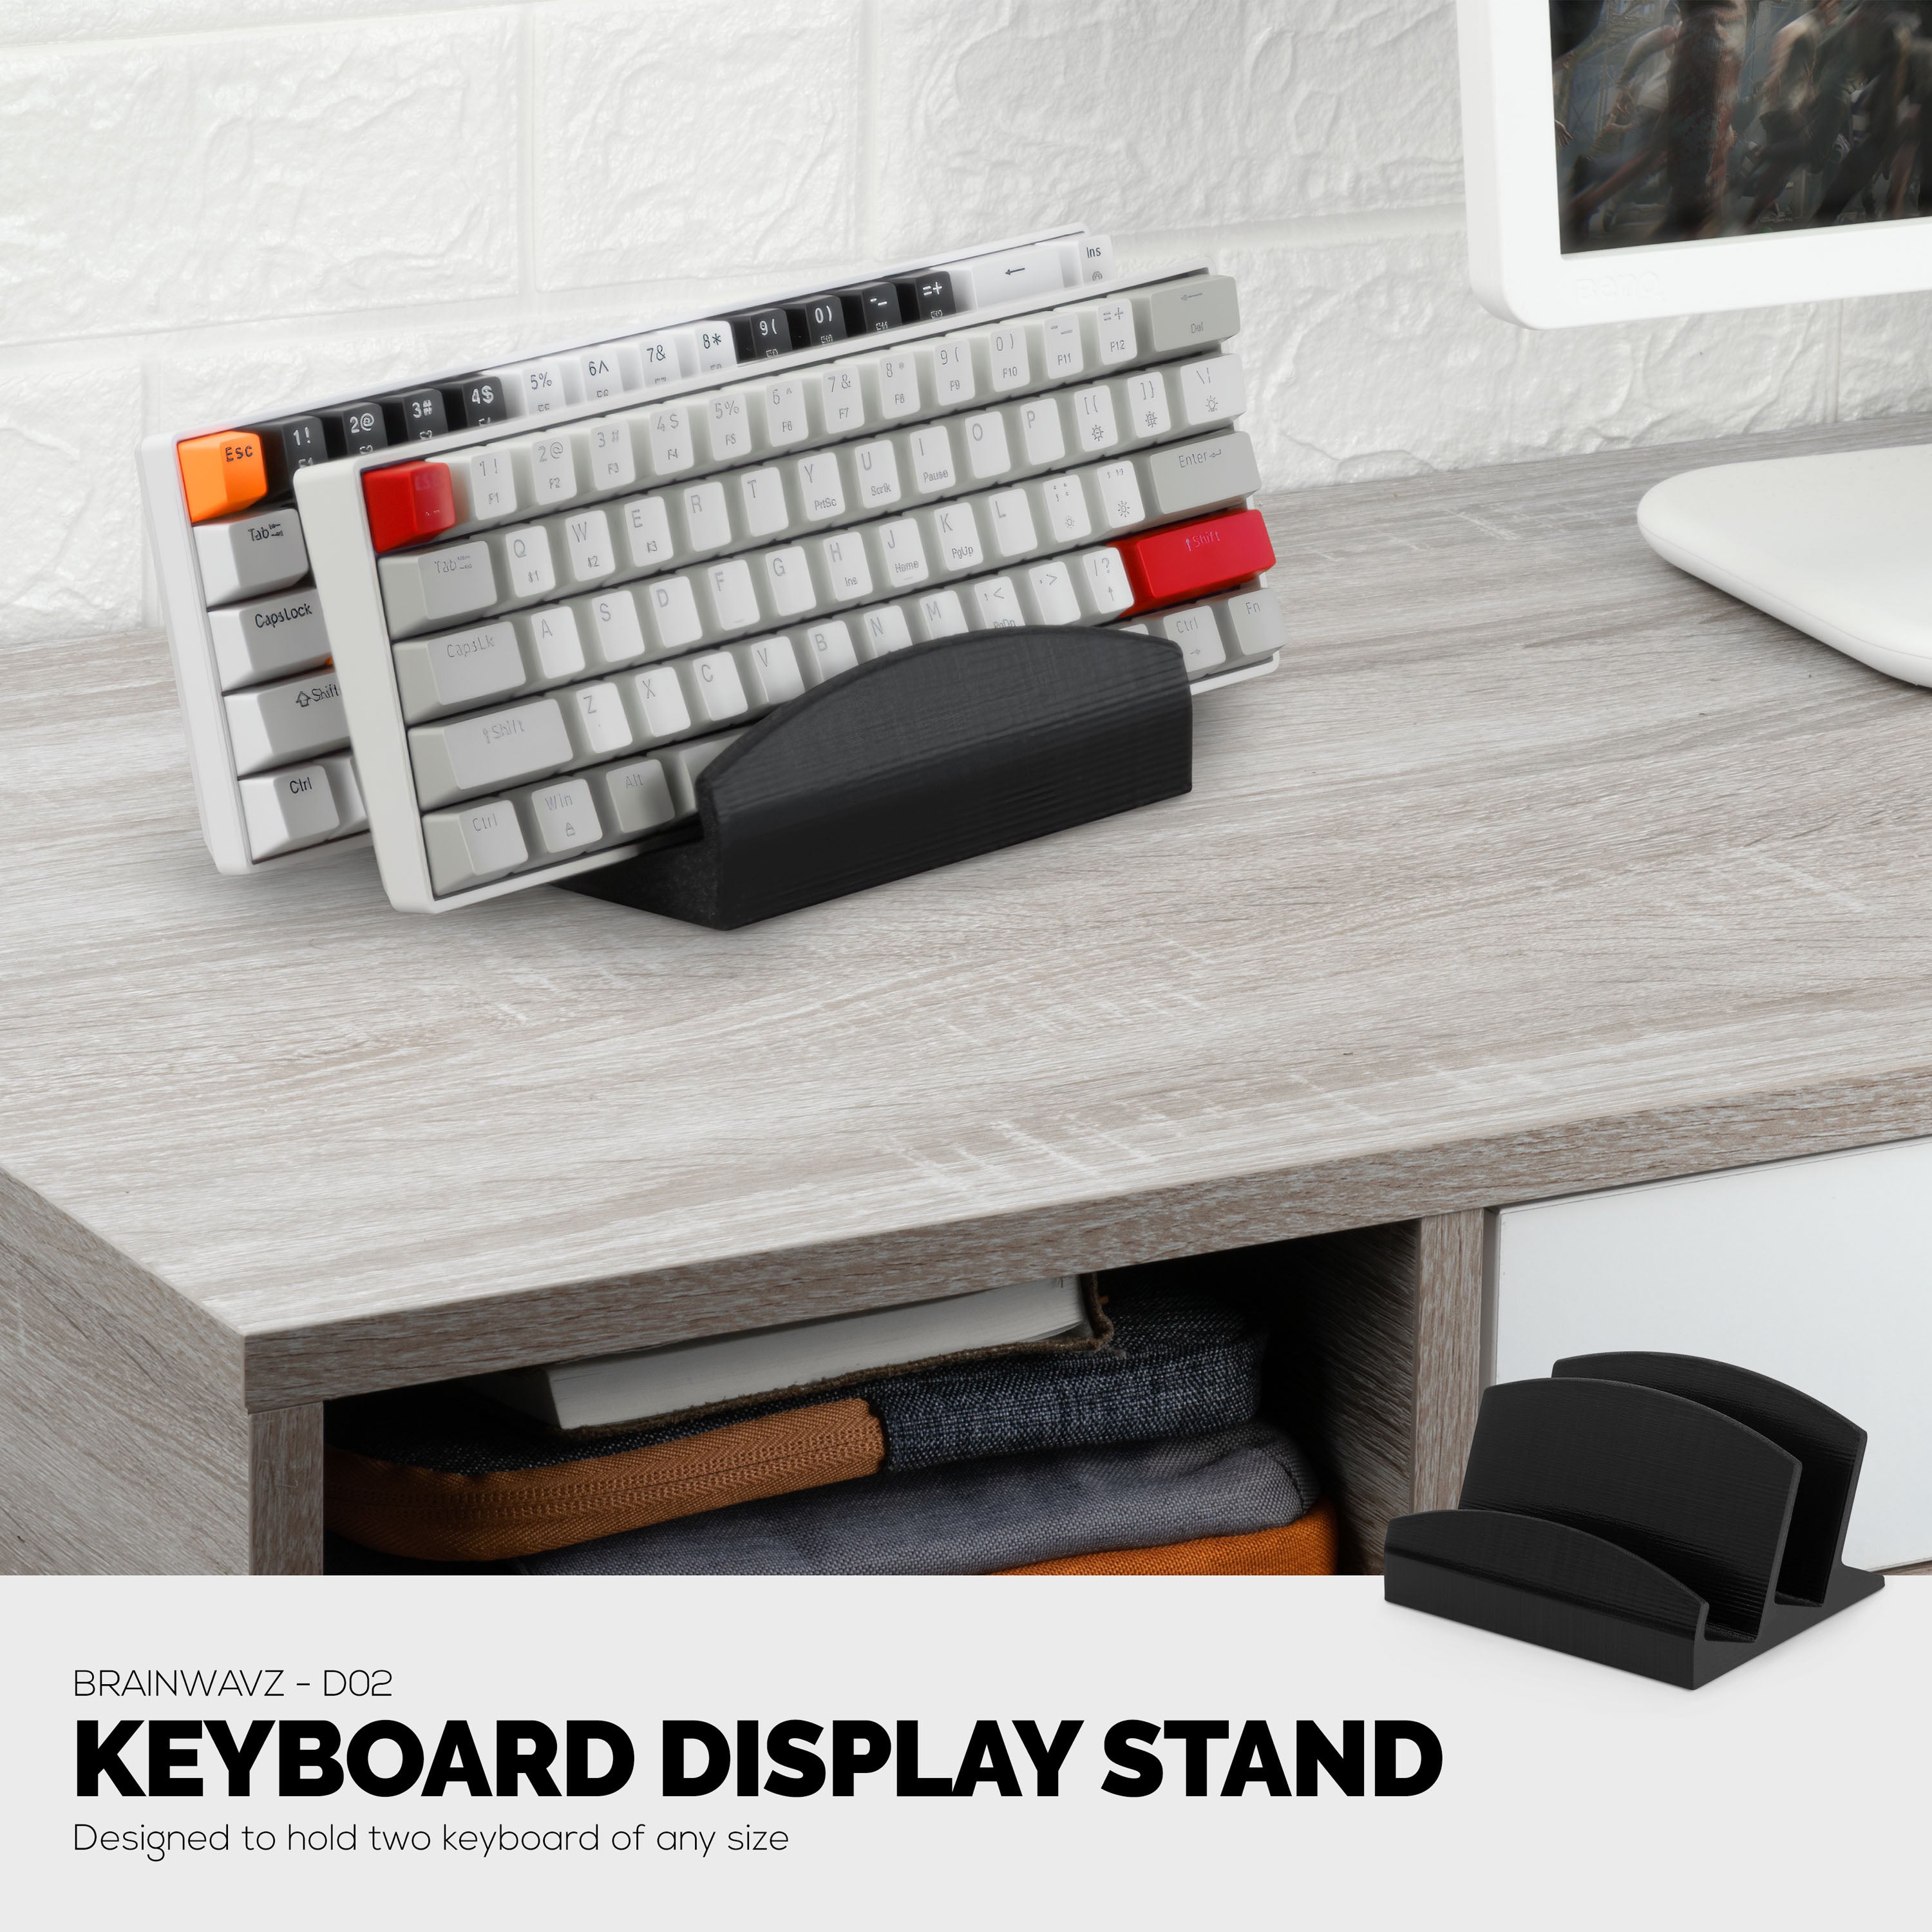 Mount-It! 2 Tier Desk Organizer Riser | Computer Monitor Stand with Keyboard Storage Shelf - Black